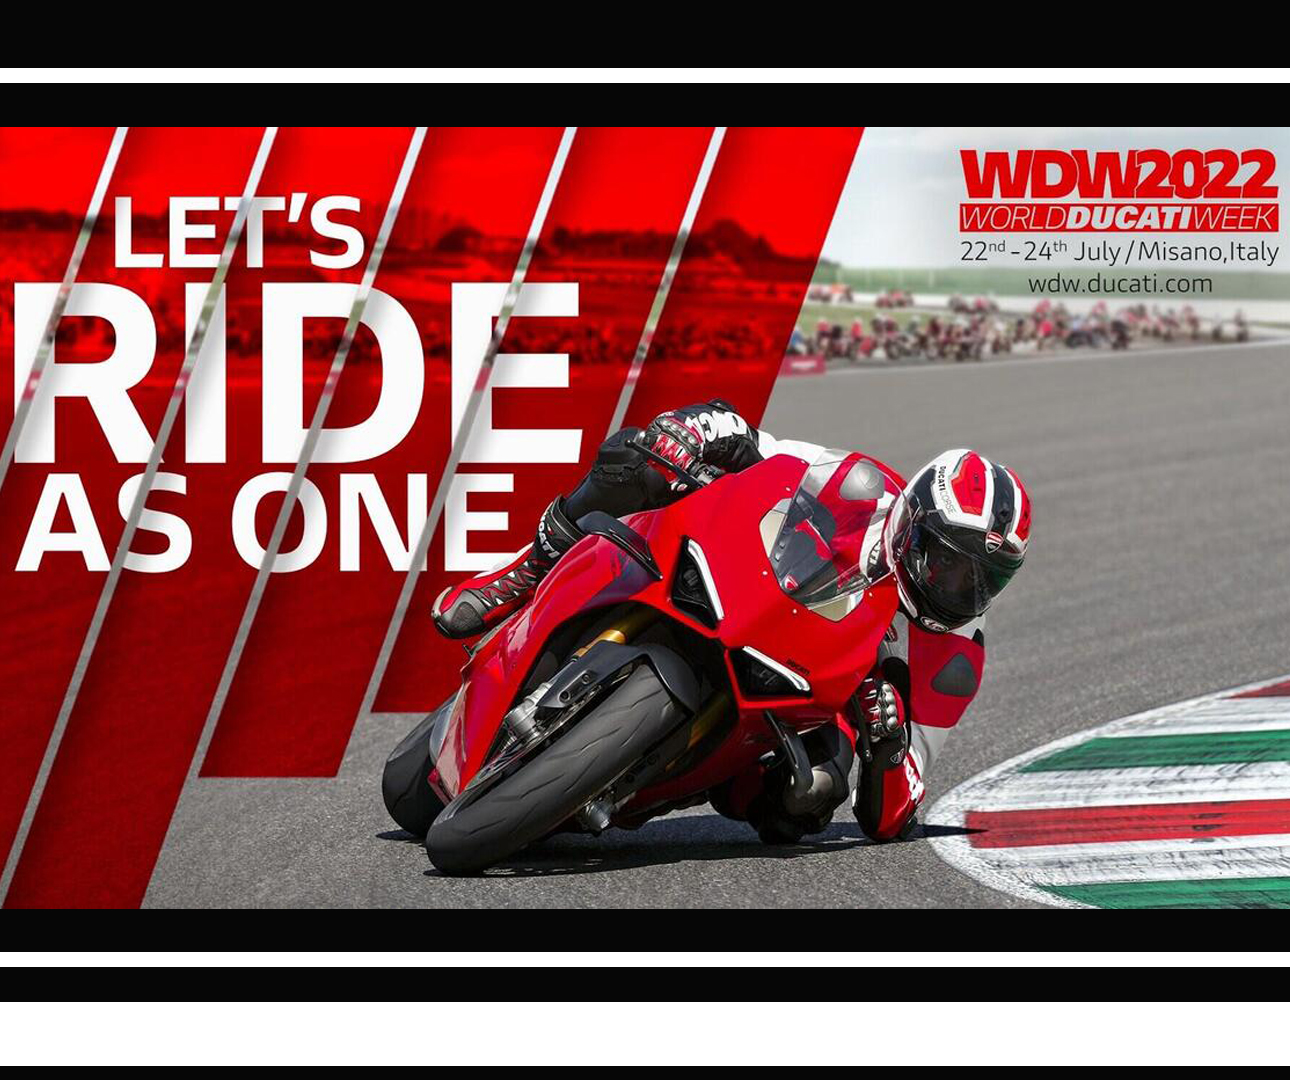 World Ducati Weekend